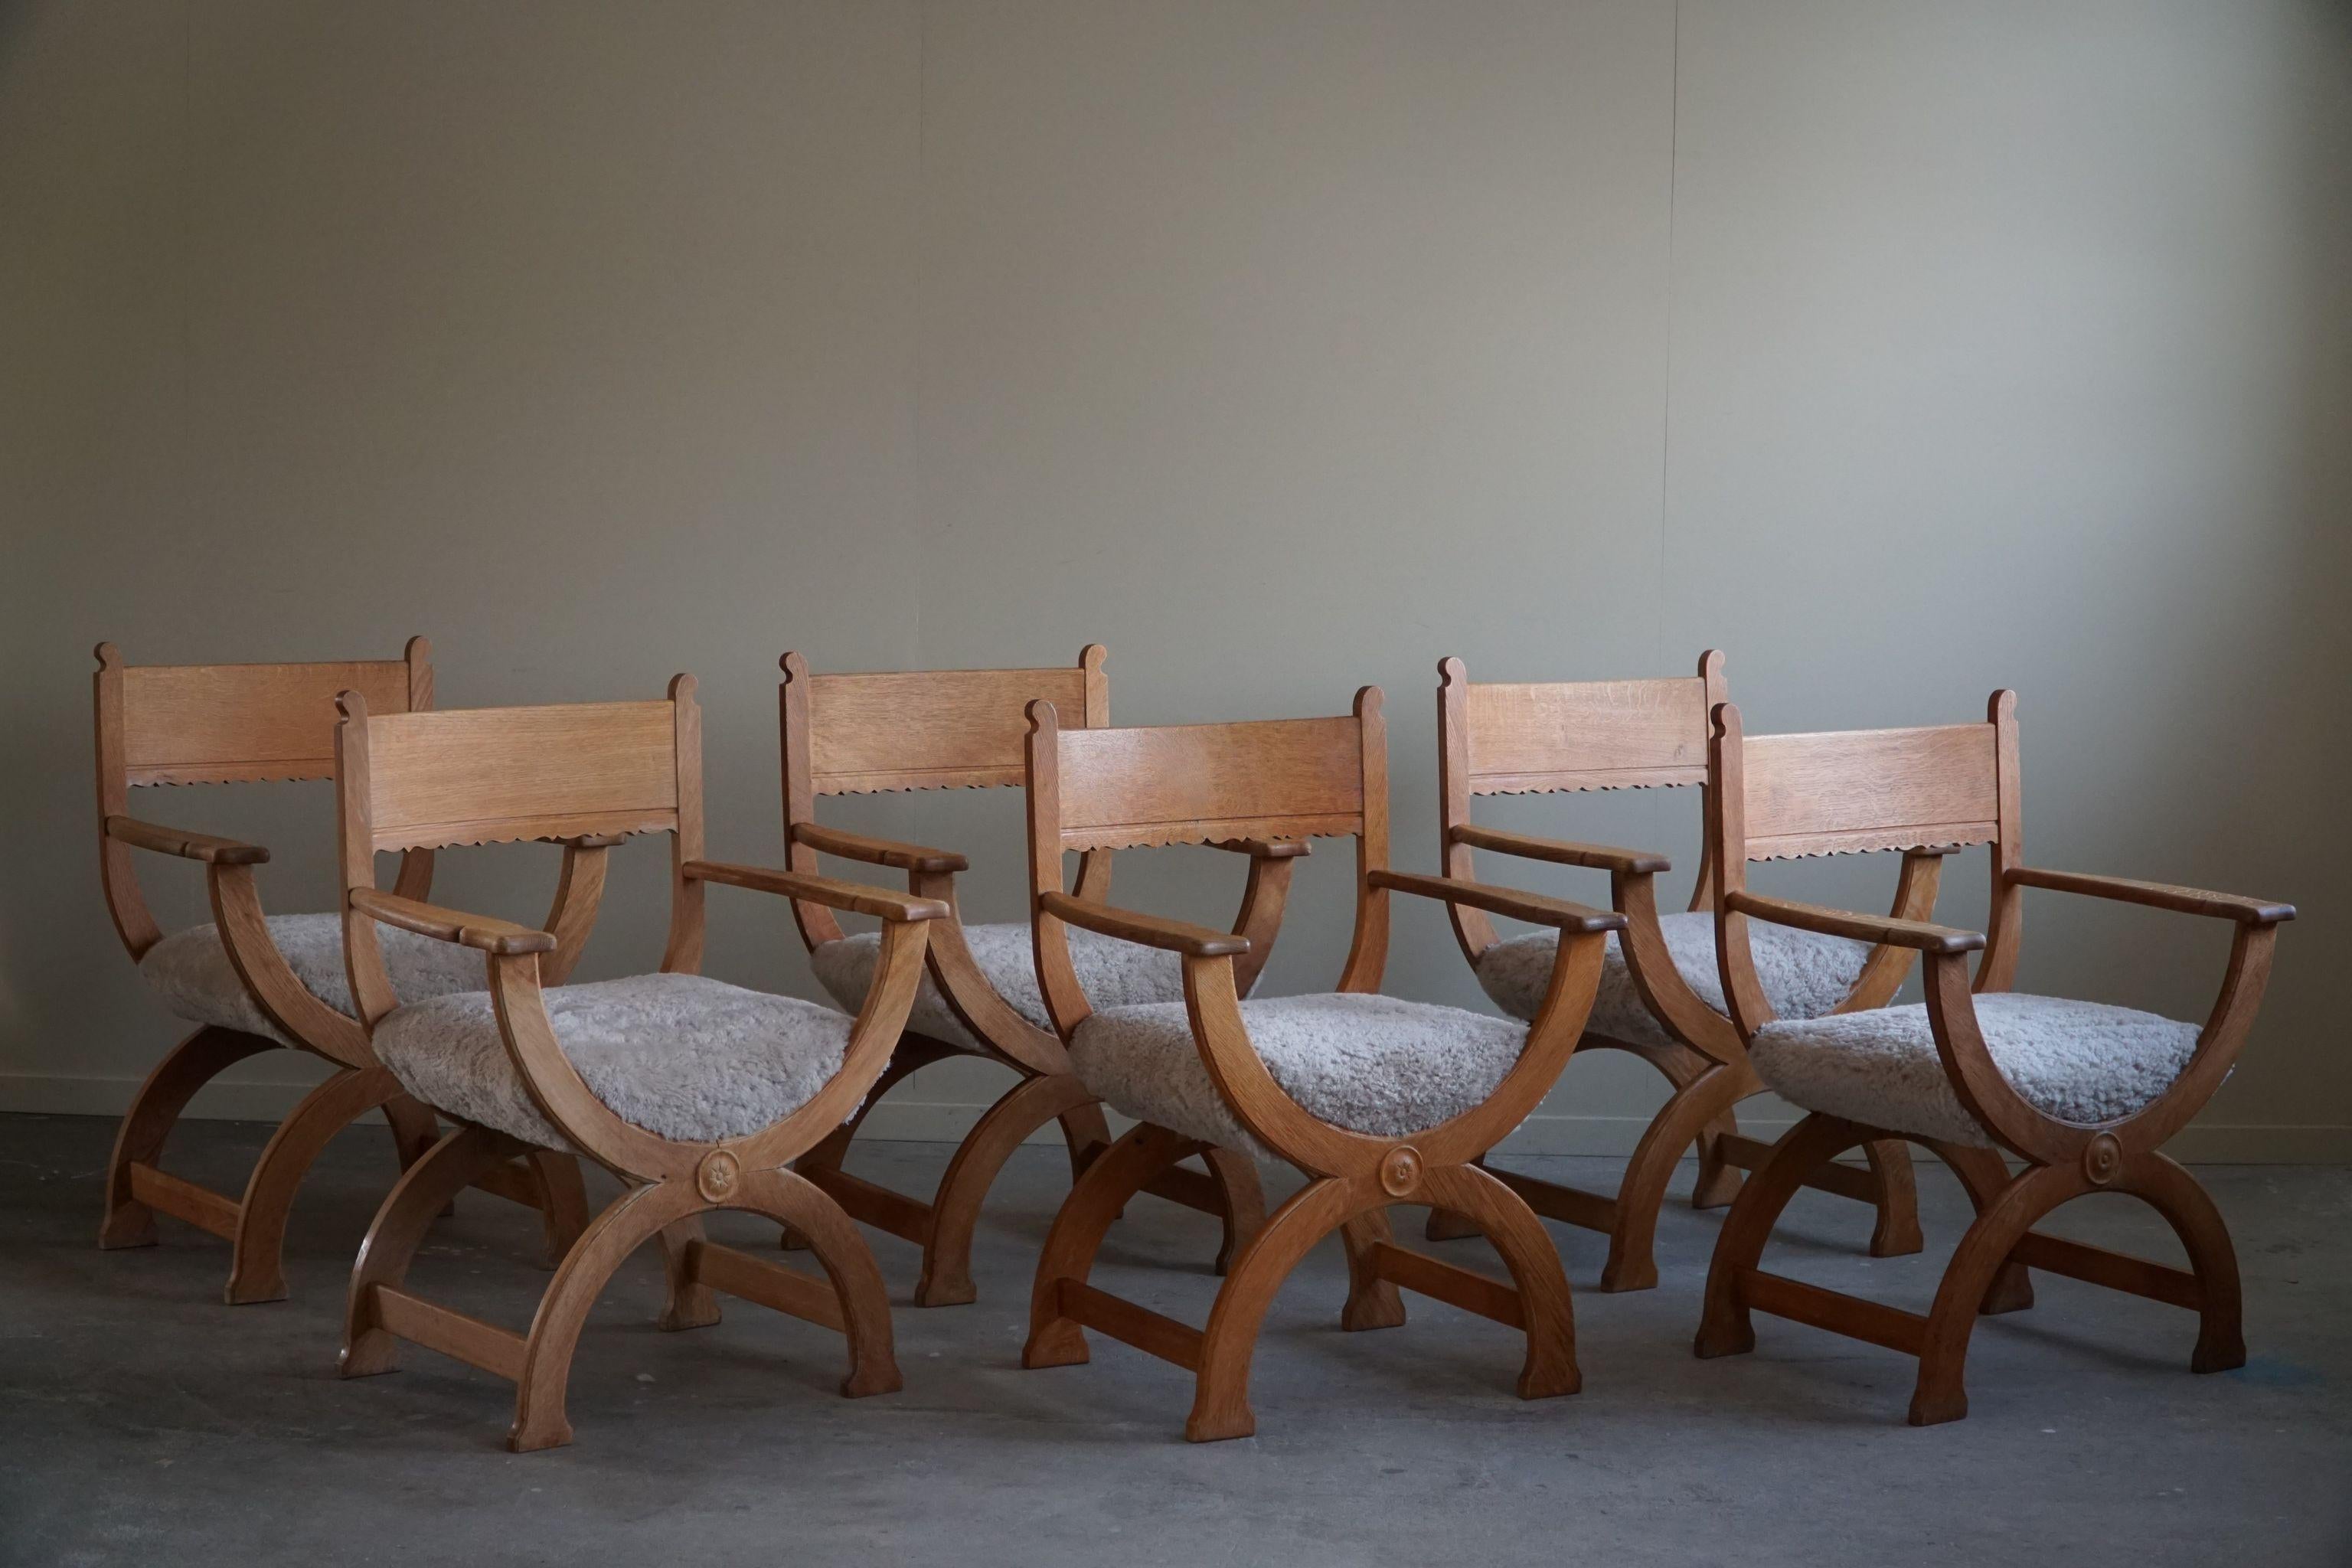 Ein schönes und seltenes Set von 6 Sesseln in Eiche, neu gepolsterte Sitze in einem großen Qualität shearling Lammwolle. Entworfen von Henning Kjaernulf für EG Kvalitetsmøbel, Dänemark, in den 1960er Jahren. 

Der Gesamteindruck dieser Stühle aus